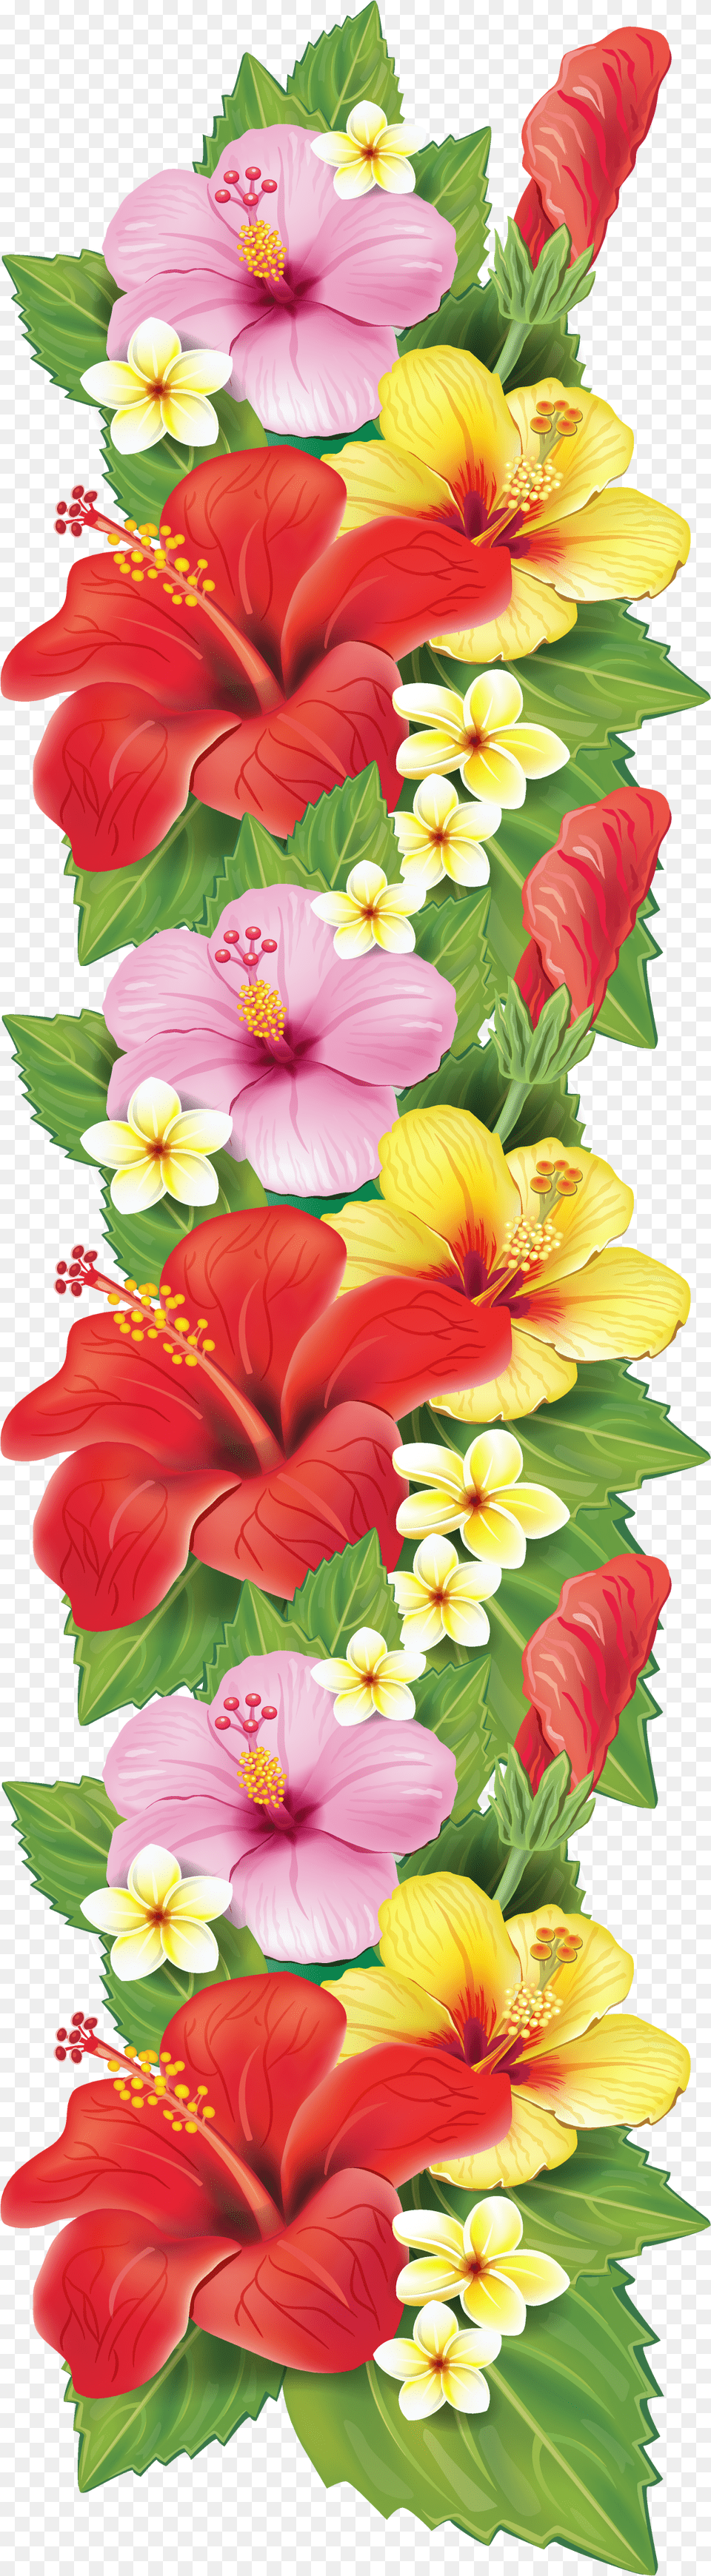 Exotic Flowers Decoration Clipart Flower Clipart Border Design, Plant, Flower Arrangement, Petal, Hibiscus Free Png